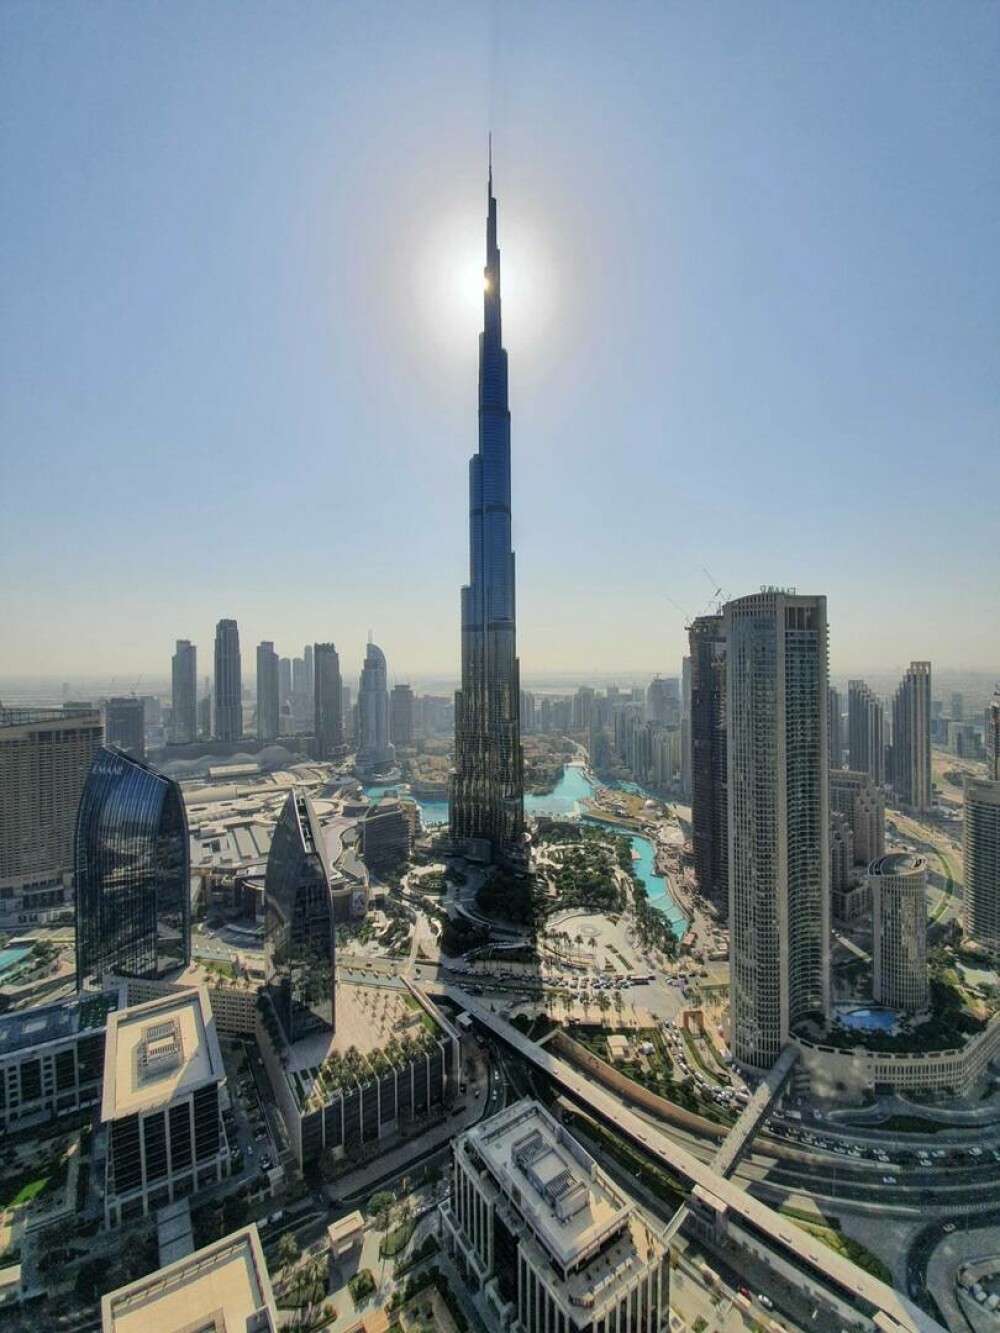 13 ani de la inaugurarea celei mai mari clădiri din lume - Burj Khalifa. Imagini de atunci și de acum | GALERIE FOTO - Imaginea 19